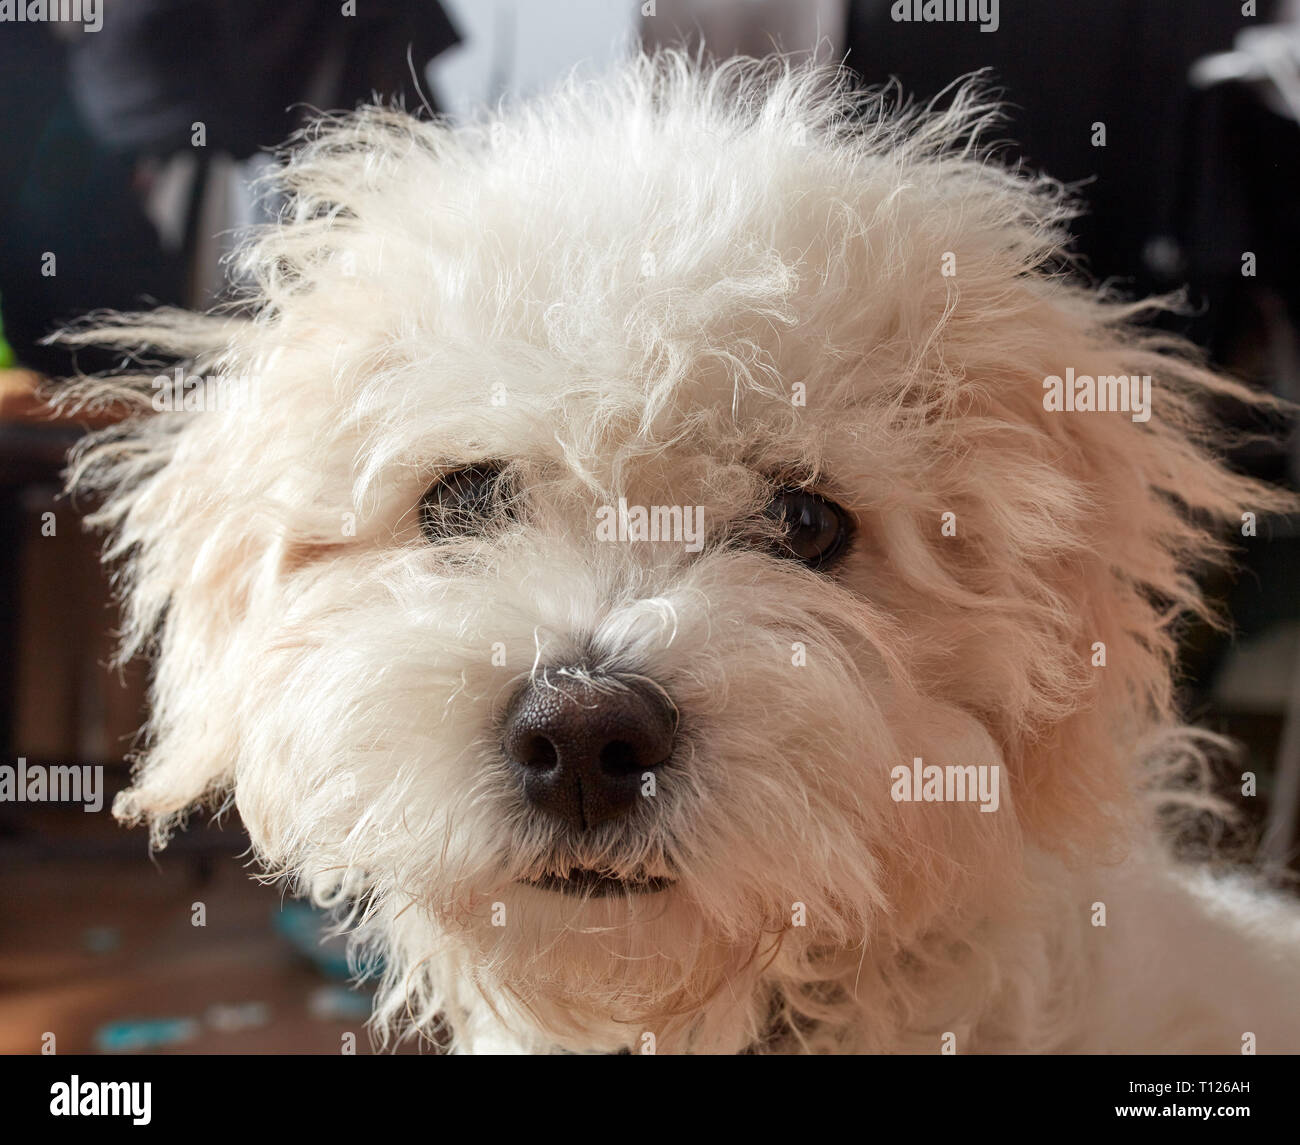 Cute little curioso juguete blancas mullidas raza perro mirando a la cámara en una cabeza disparado en interiores Foto de stock